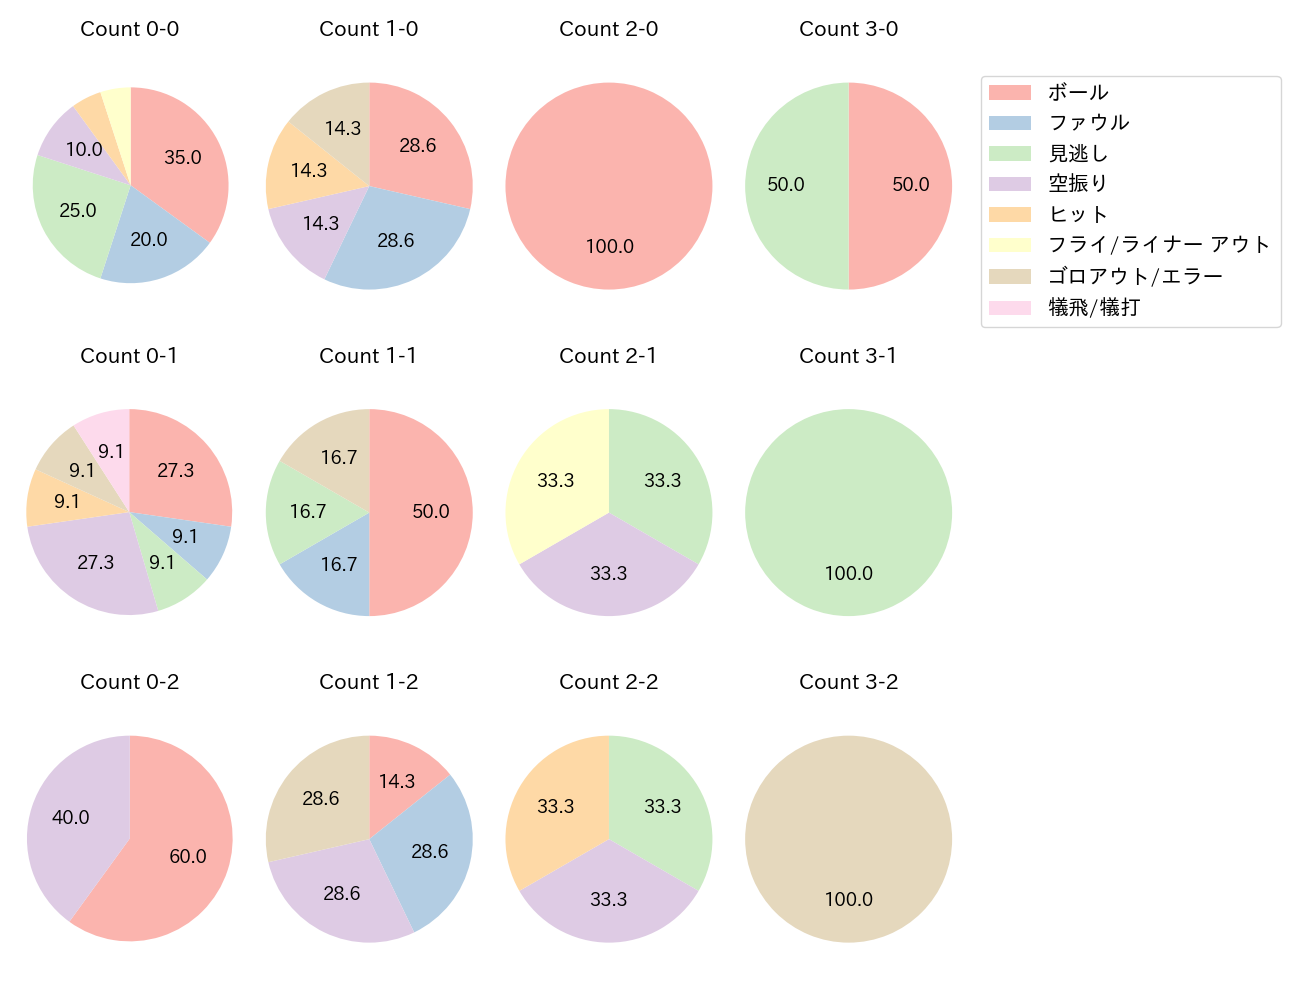 太田 椋の球数分布(2021年9月)